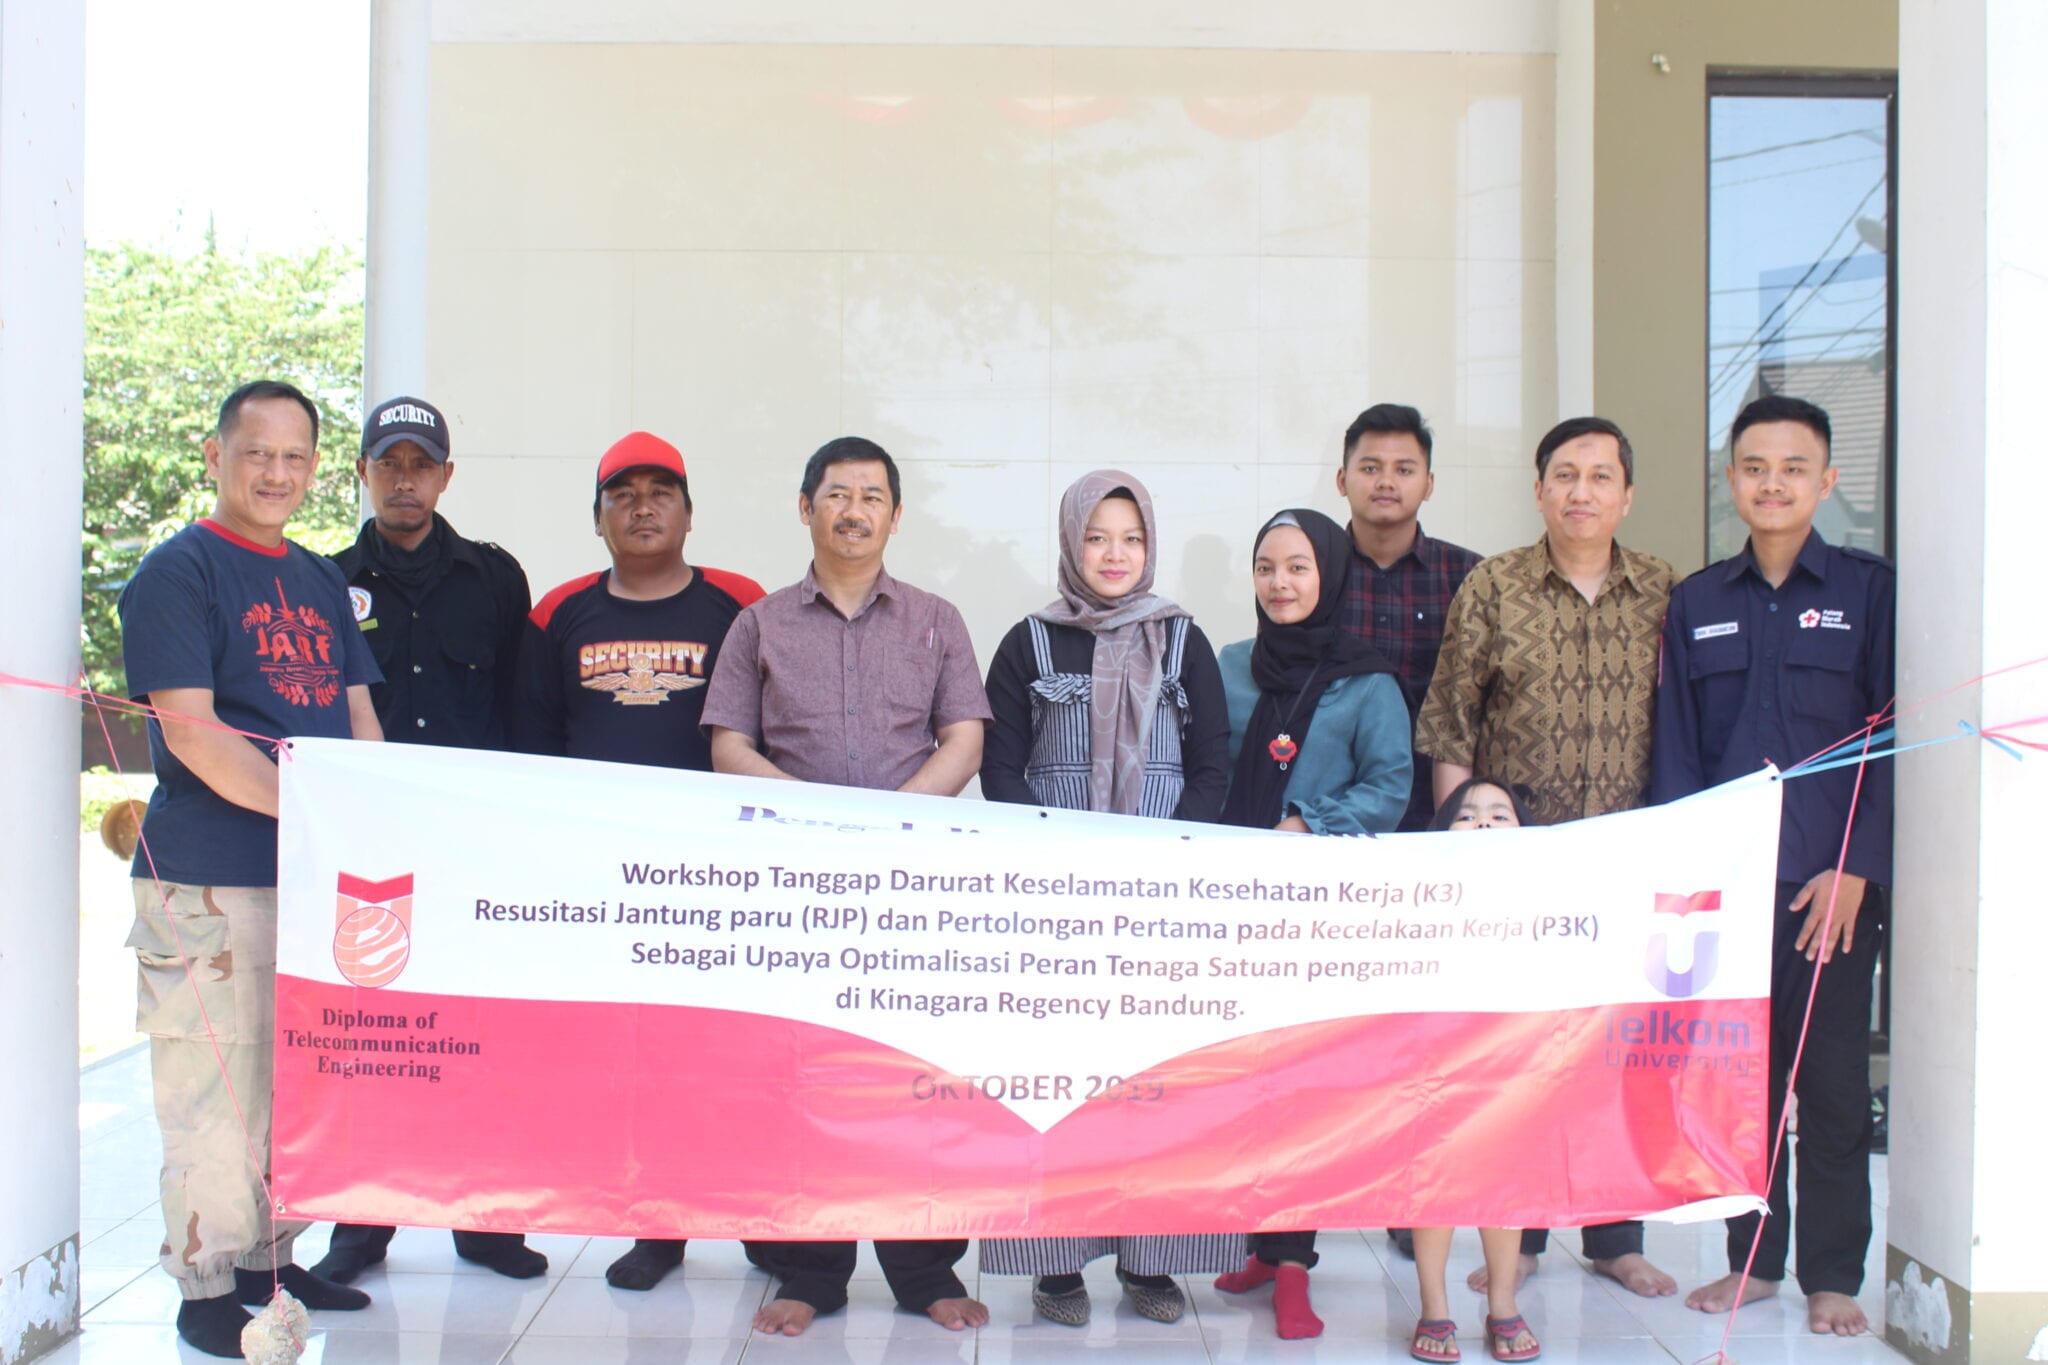 Workshop Tanggap Darurat Resusitasi Jantung Paru (RJP) Untuk Meningkatkan Keselamatan Dan Kesehatan Untuk Tenaga Pengaman Komplek Kinagara Regency Kabupaten Bandung